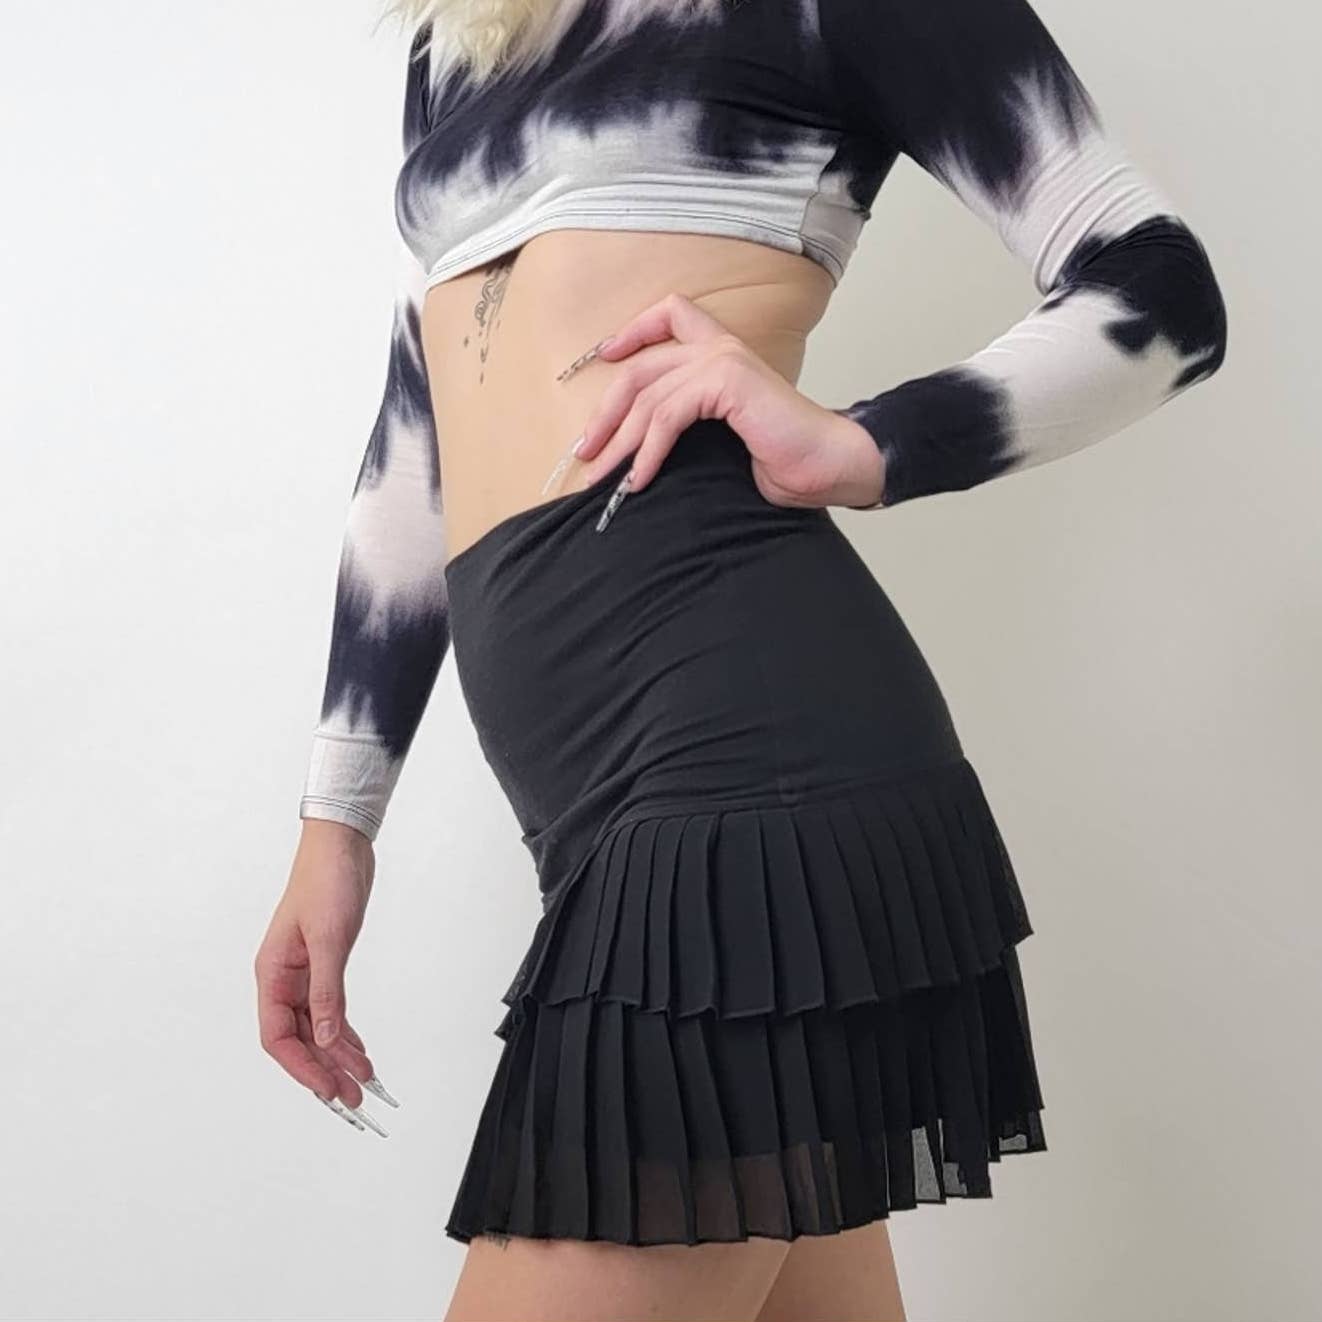 xxi Frilly Dancer Skirt - S